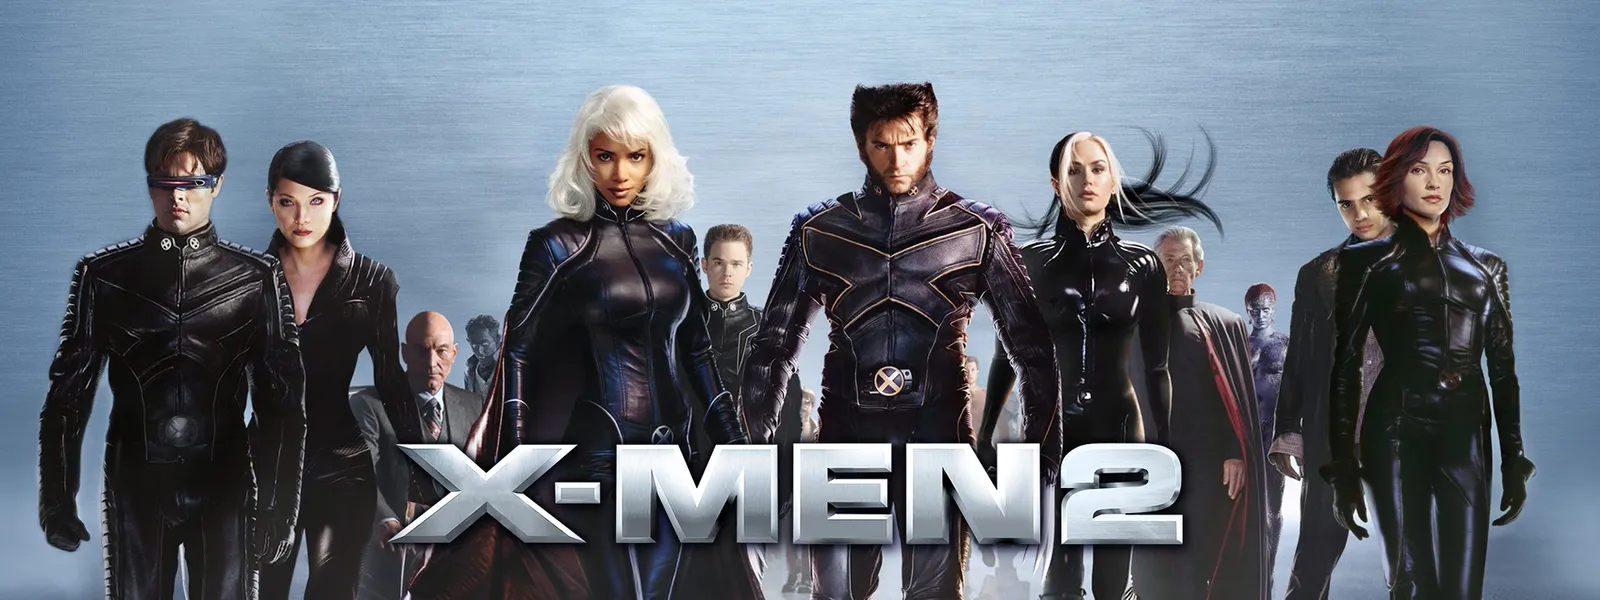 X Men2 が見放題 Hulu フールー お試し無料